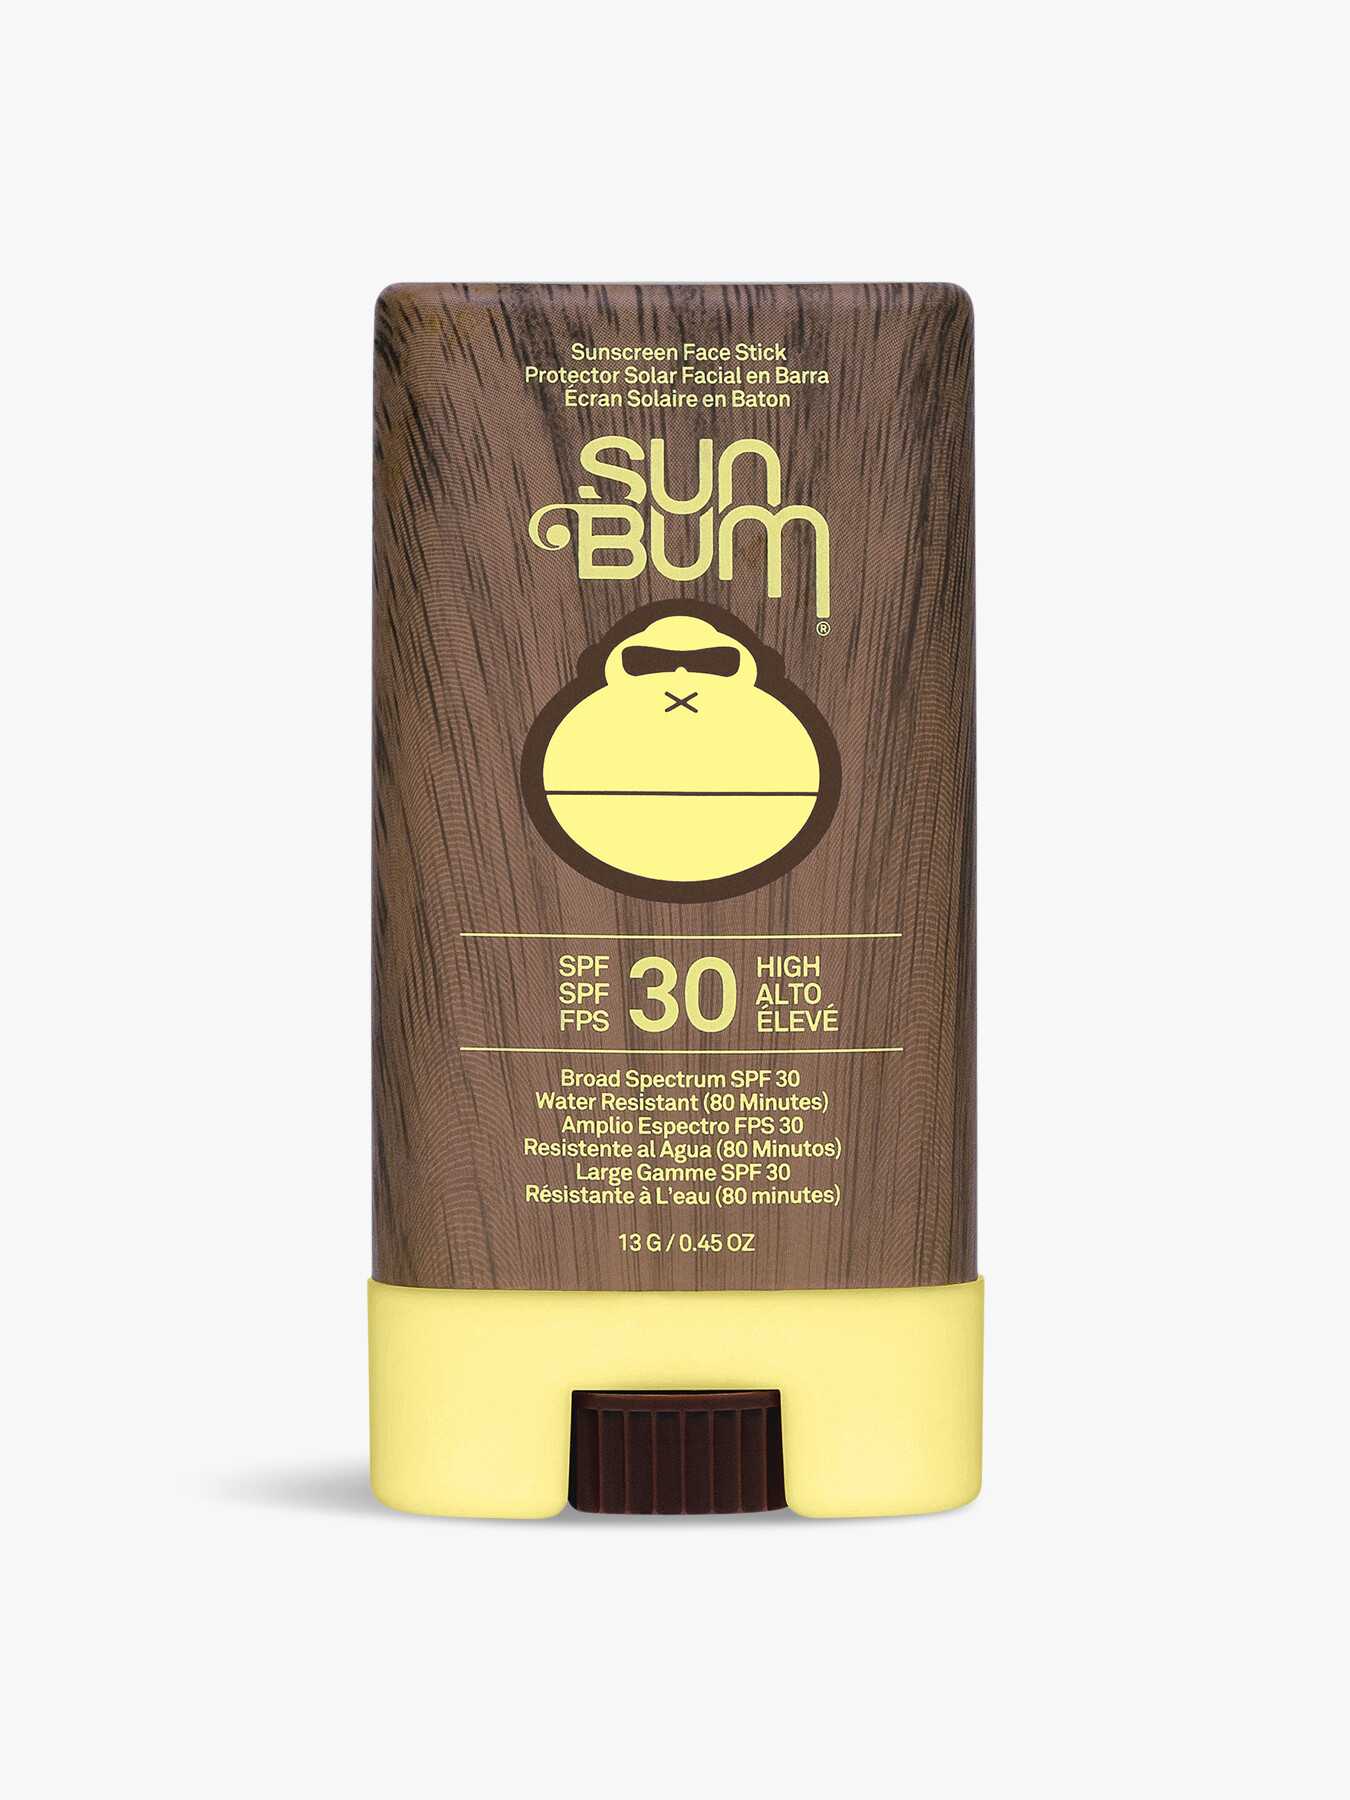 Sun Bum Original Spf30 Face Stick 13g